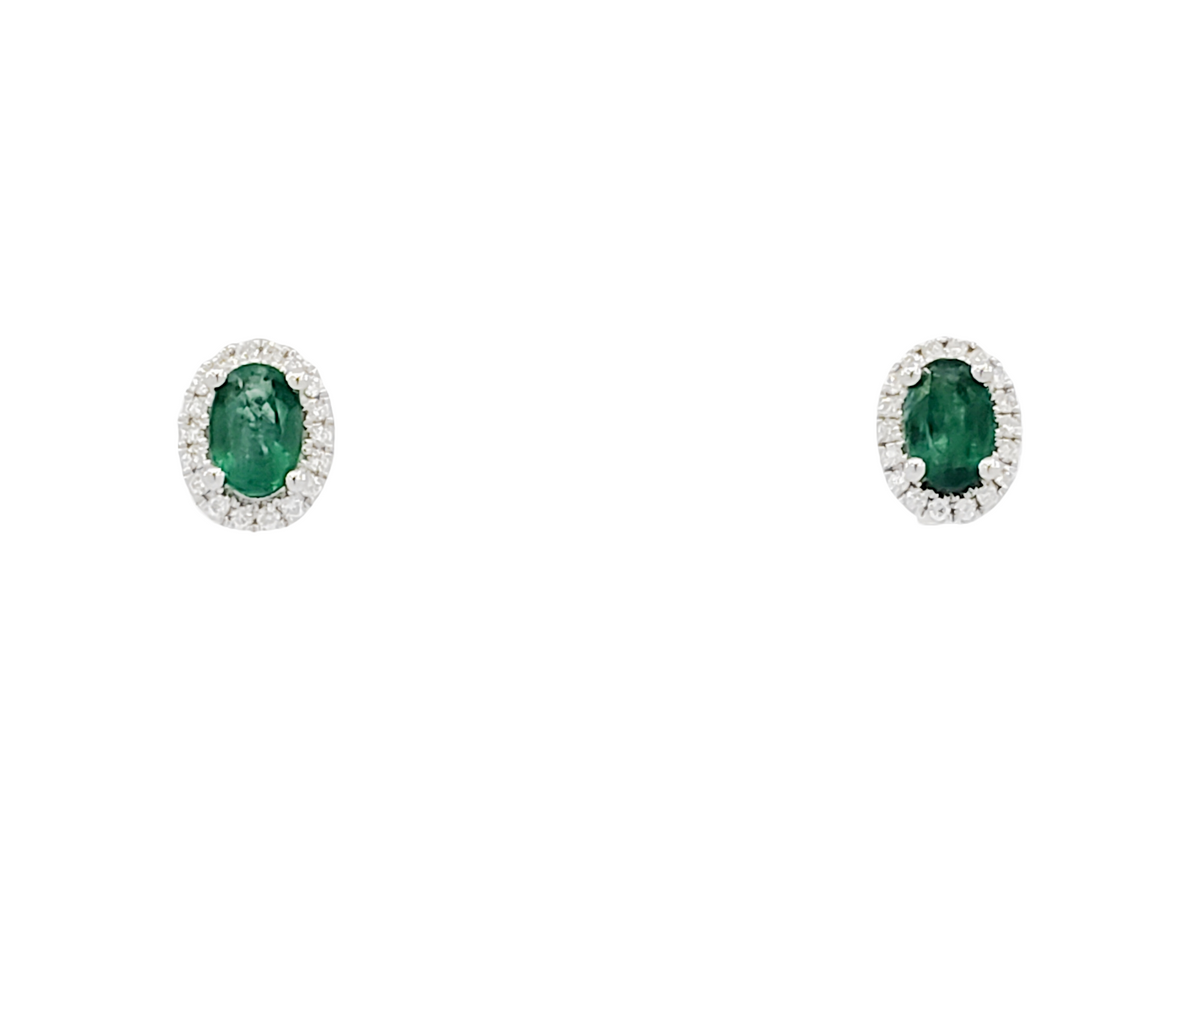 Aretes con halo de diamantes y esmeraldas de talla ovalada en oro blanco de 18 quilates